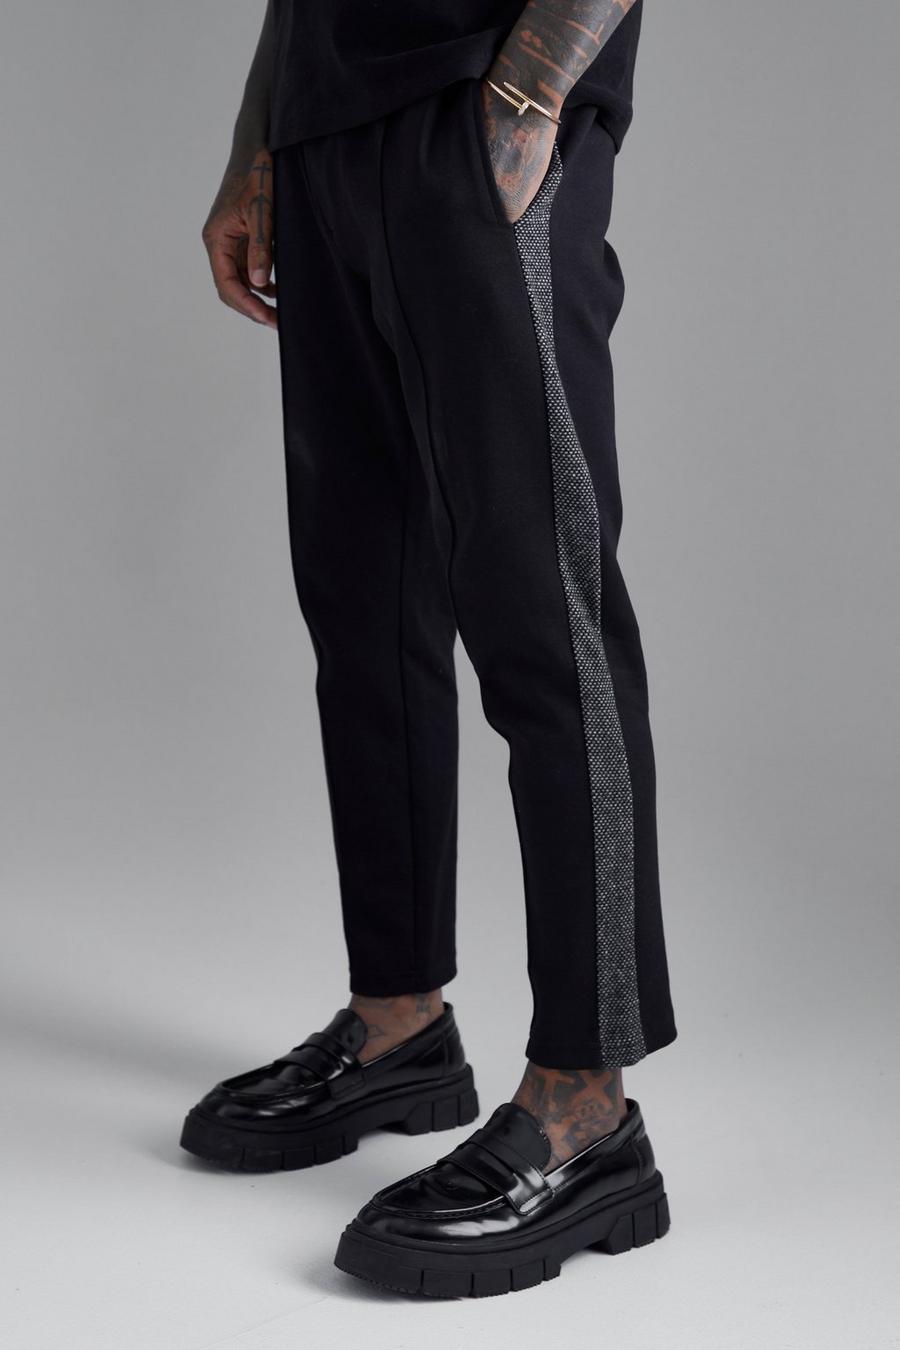 Pantaloni tuta affusolati Slim Fit con pannelli laterali e nervature, Black nero